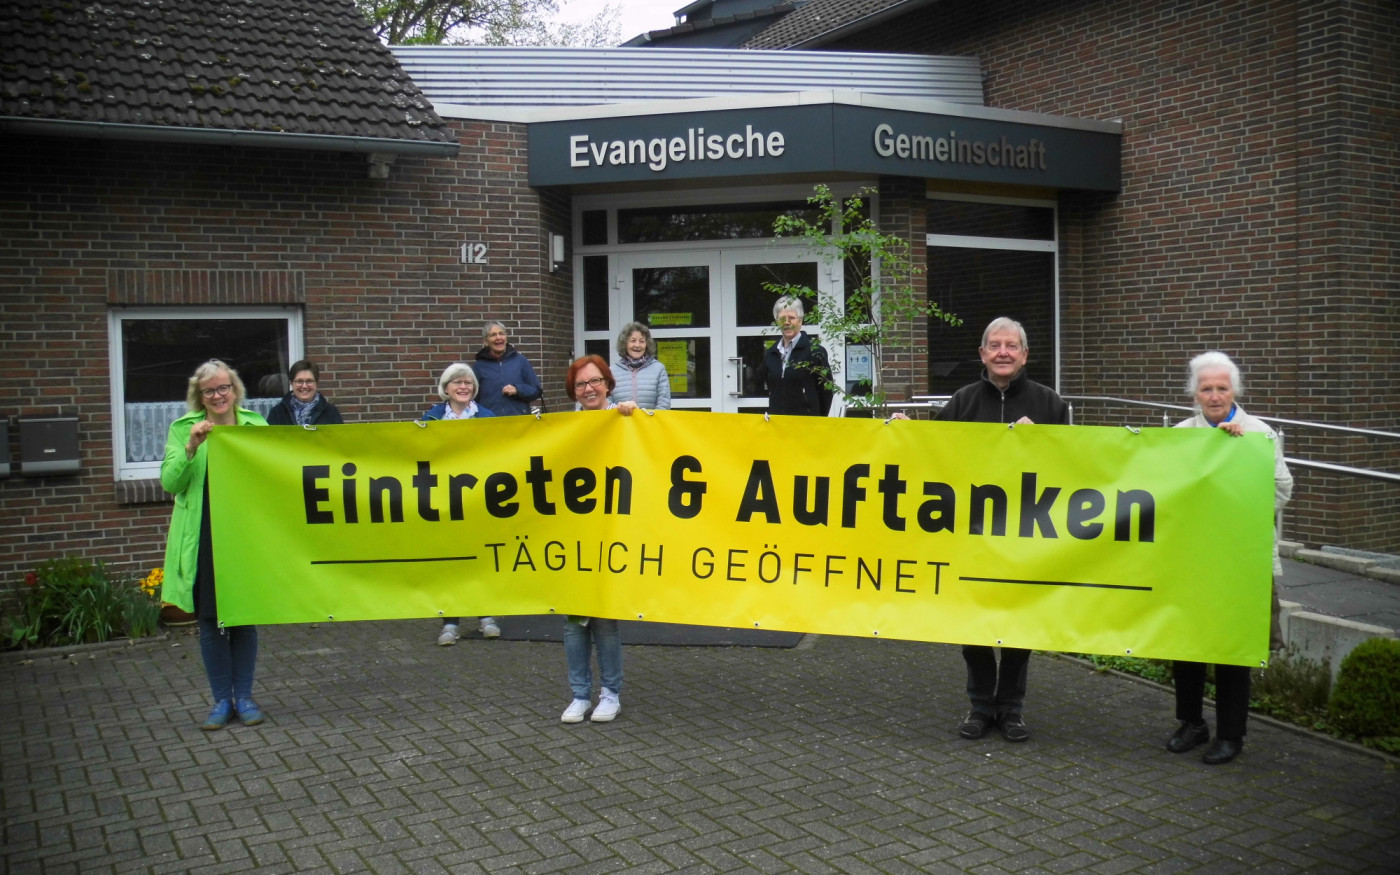 Eintreten und Auftanken - Gifhorns Evangelische Gemeinschaft öffnet ihre Gemeinderäume für Besucher